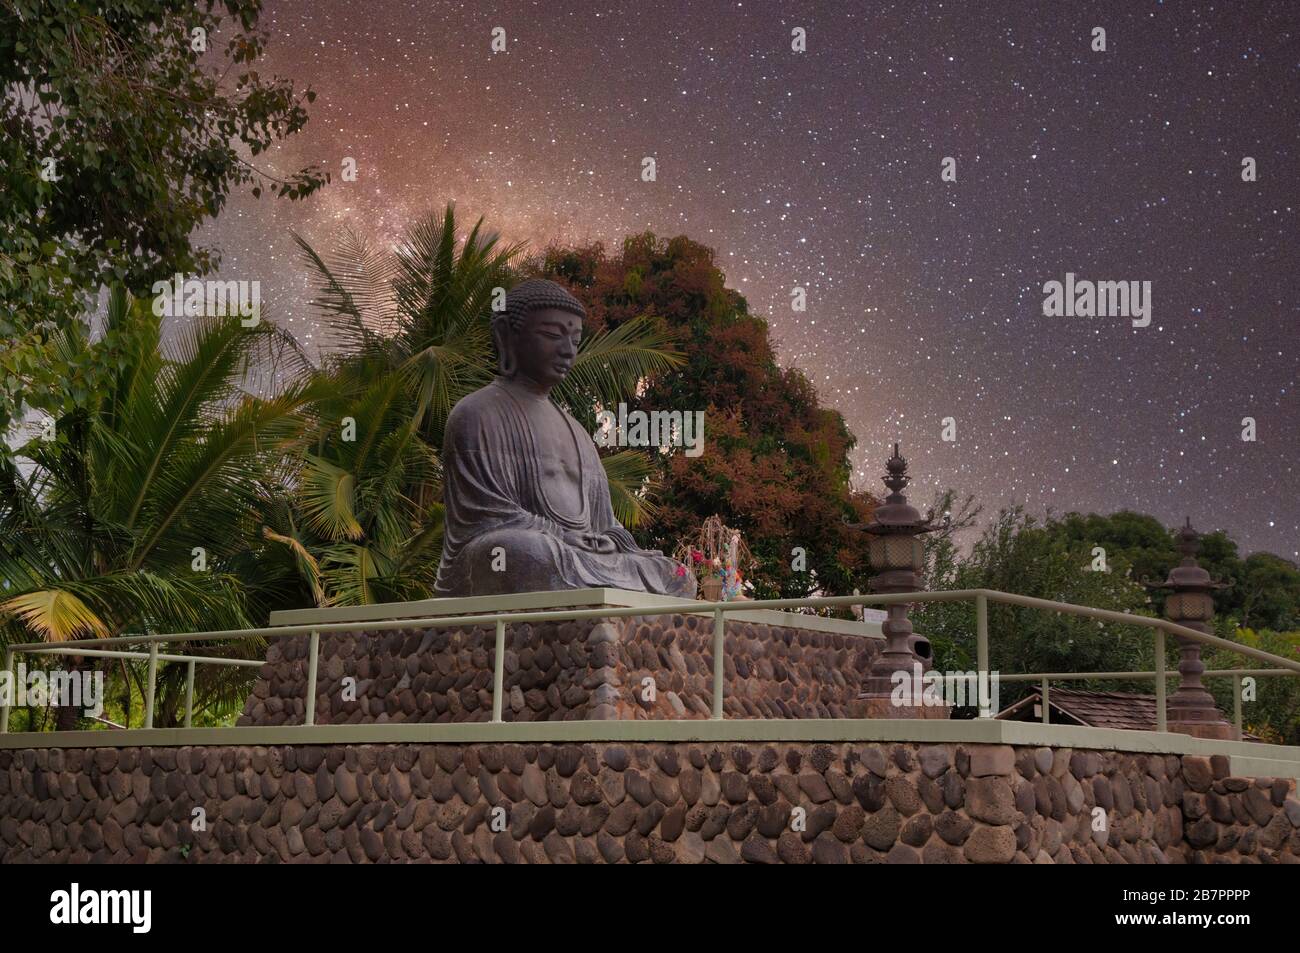 Statue des Buddha in der Nacht mit Sternenhimmel. Stockfoto